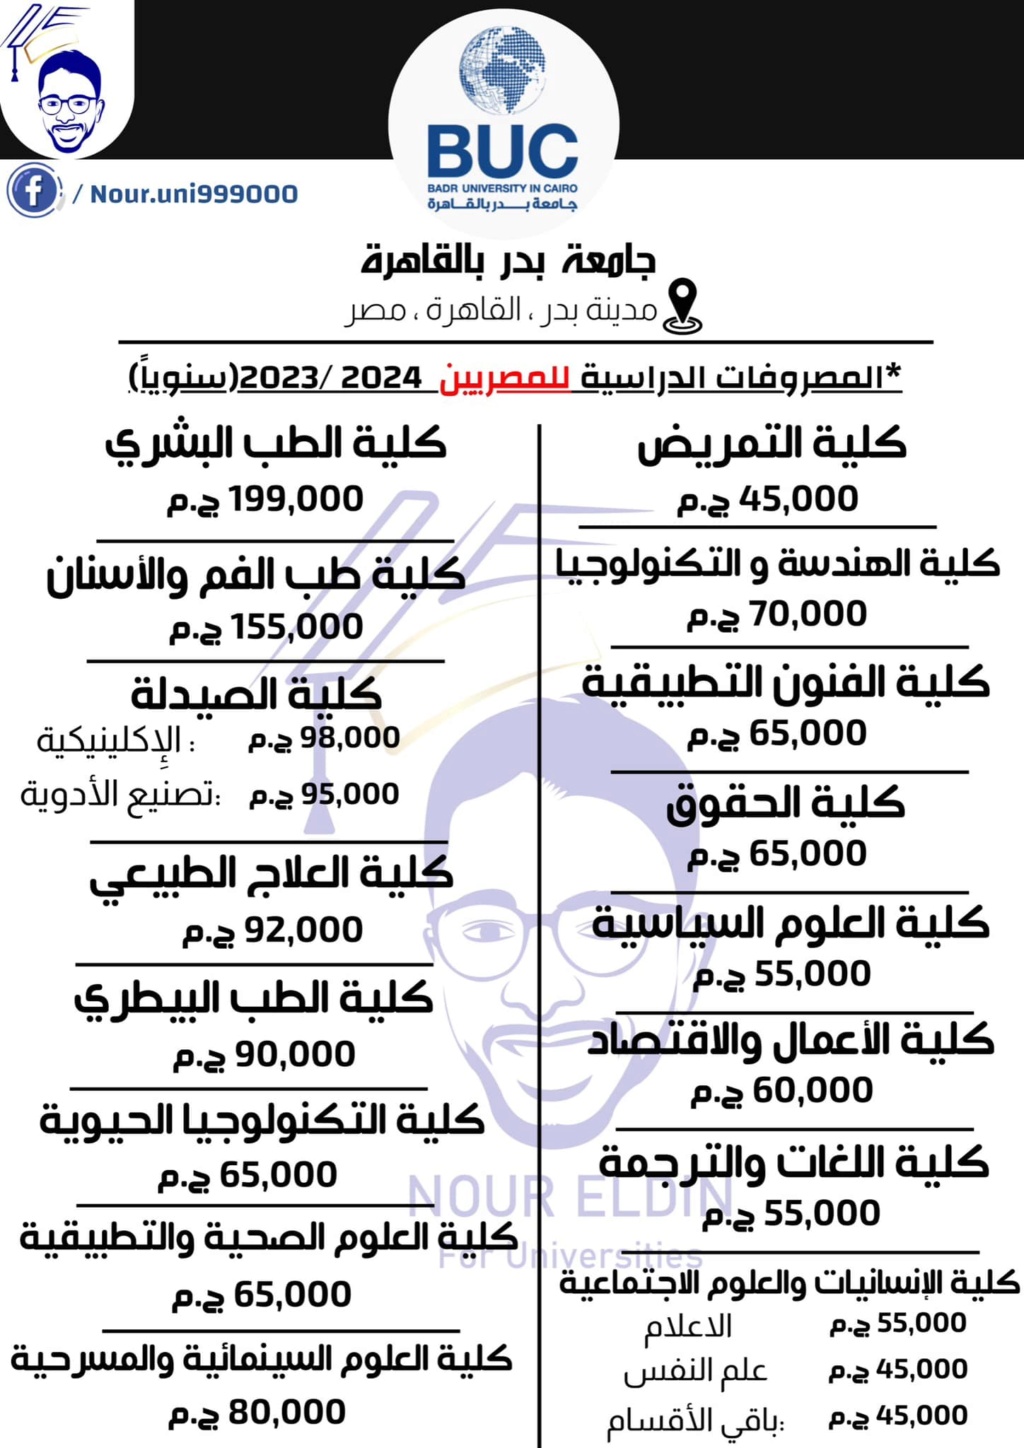 جامعة - مصروفات جامعة بدر بالقاهرة للعام ٢٠٢٣ / ٢٠٢٤ 31104